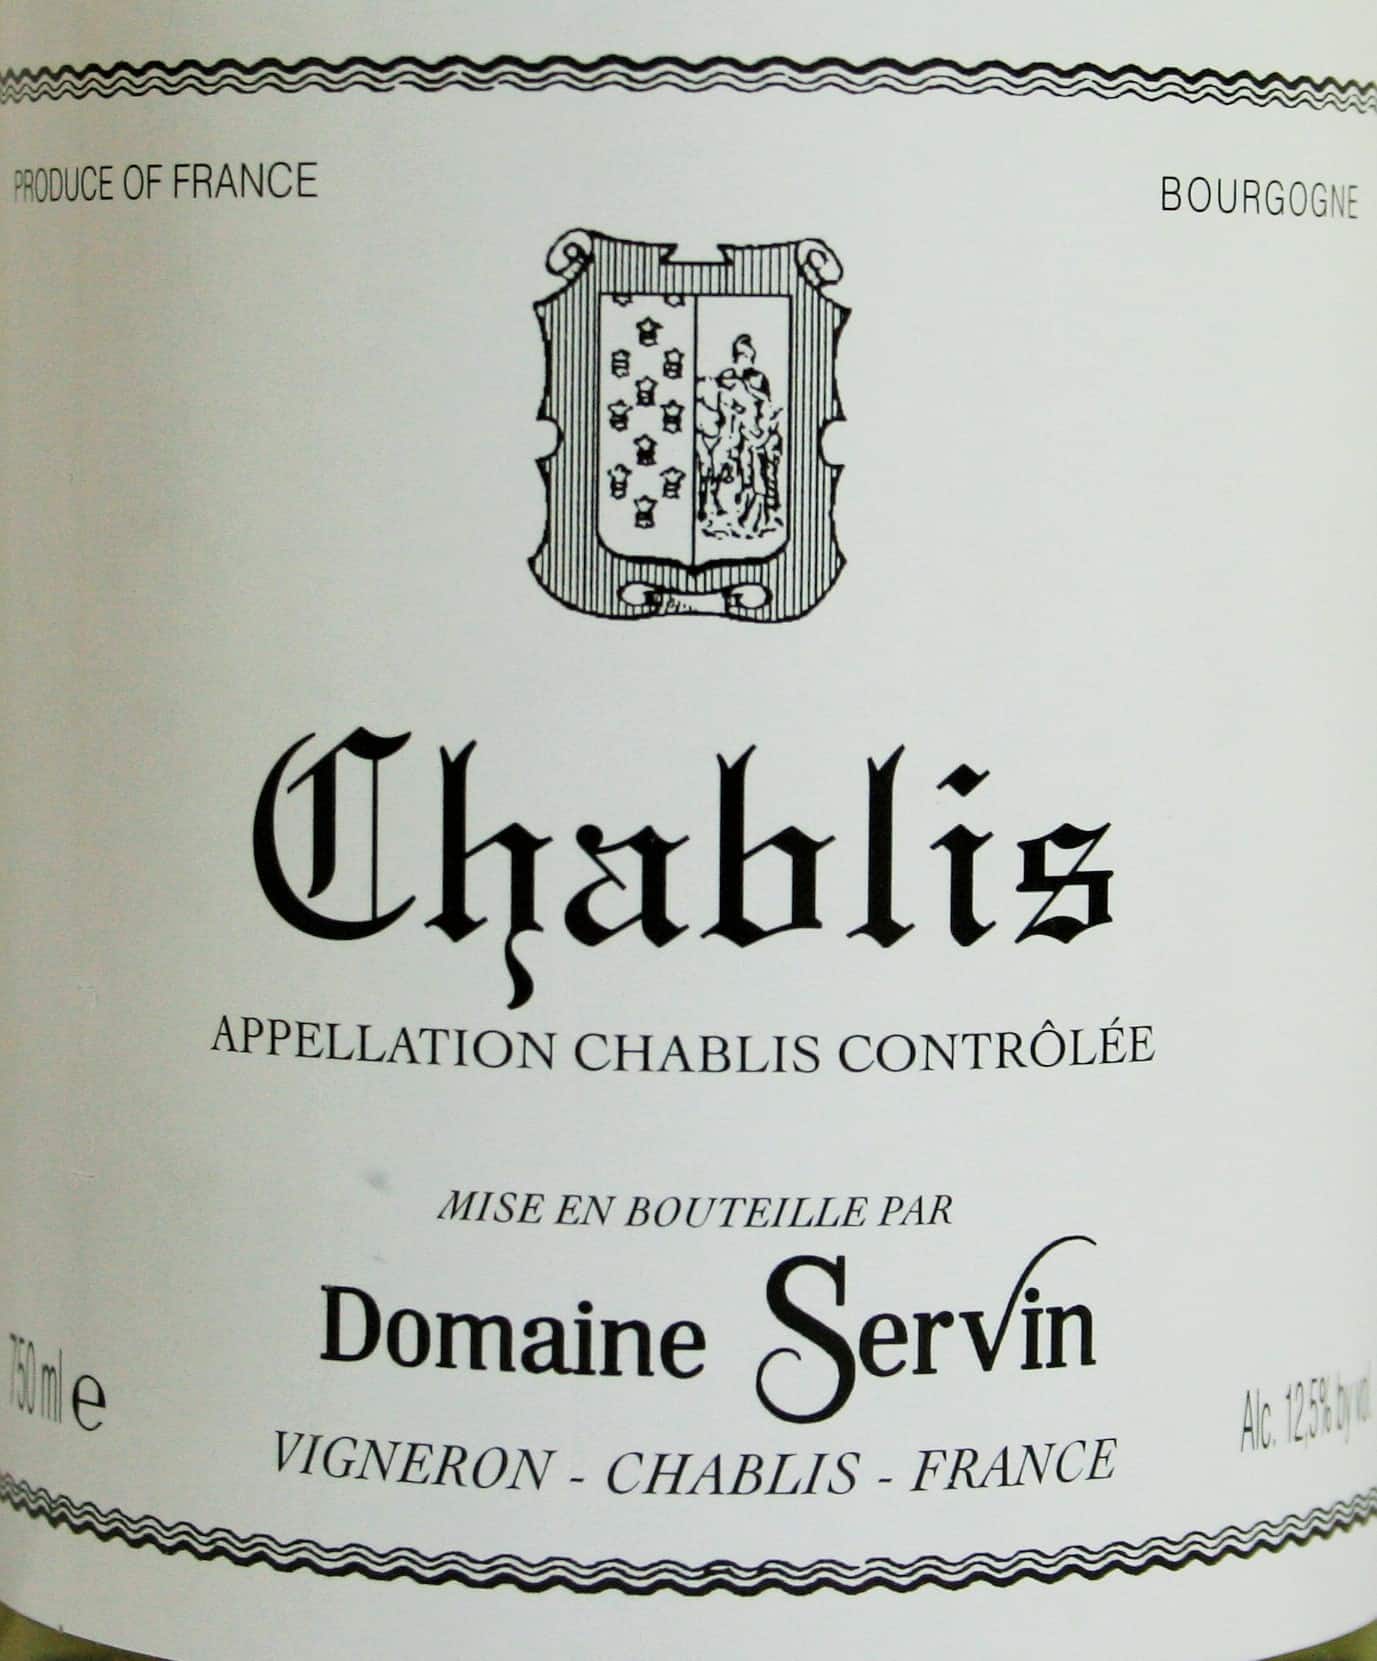 Domaine Servin Chablis 2013